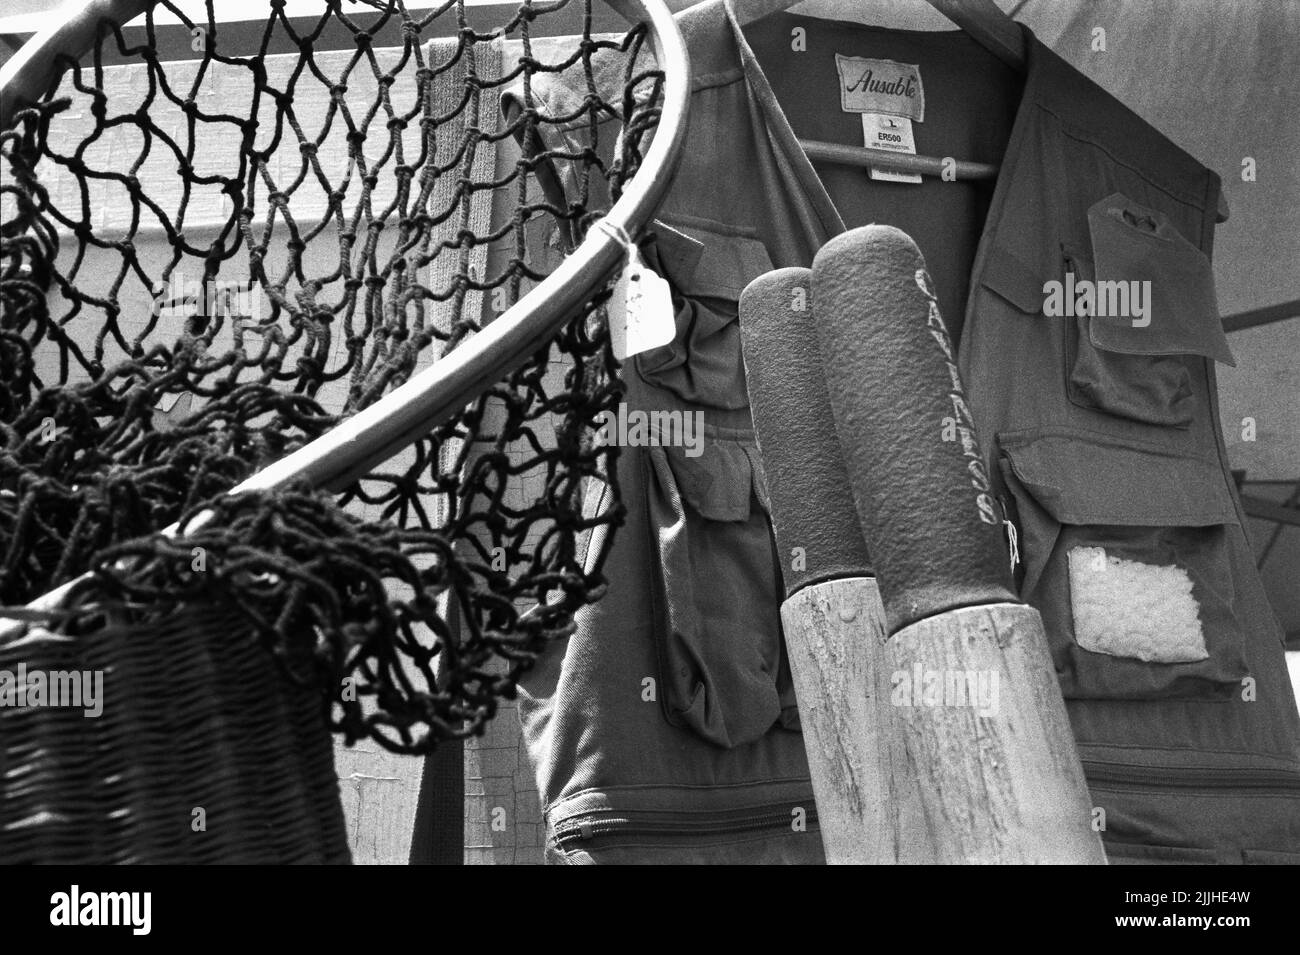 Filet de pêche, gilet et verrats exposés lors d'une fuite marquée sur Kimball Farms Haverhill, Massachusetts, États-Unis. Image capturée sur film noir et blanc analogique Banque D'Images